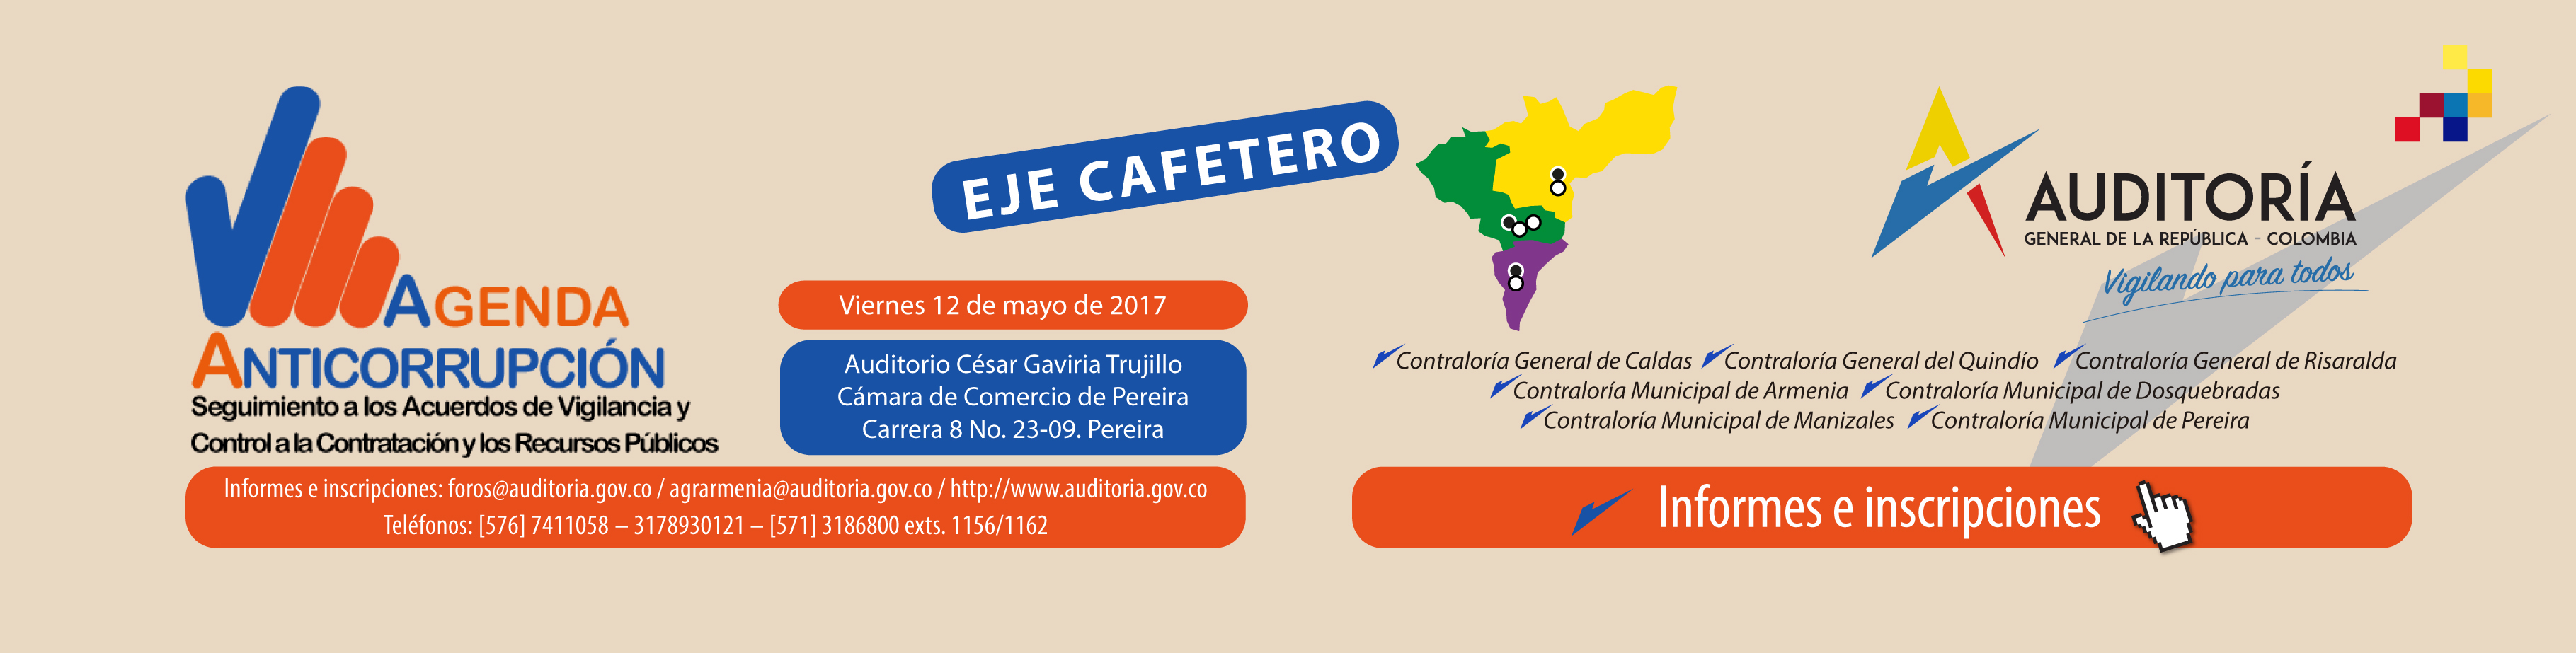  El viernes en Pereira: Agenda Anticorrupción con organismos de control fiscal del Eje Cafetero